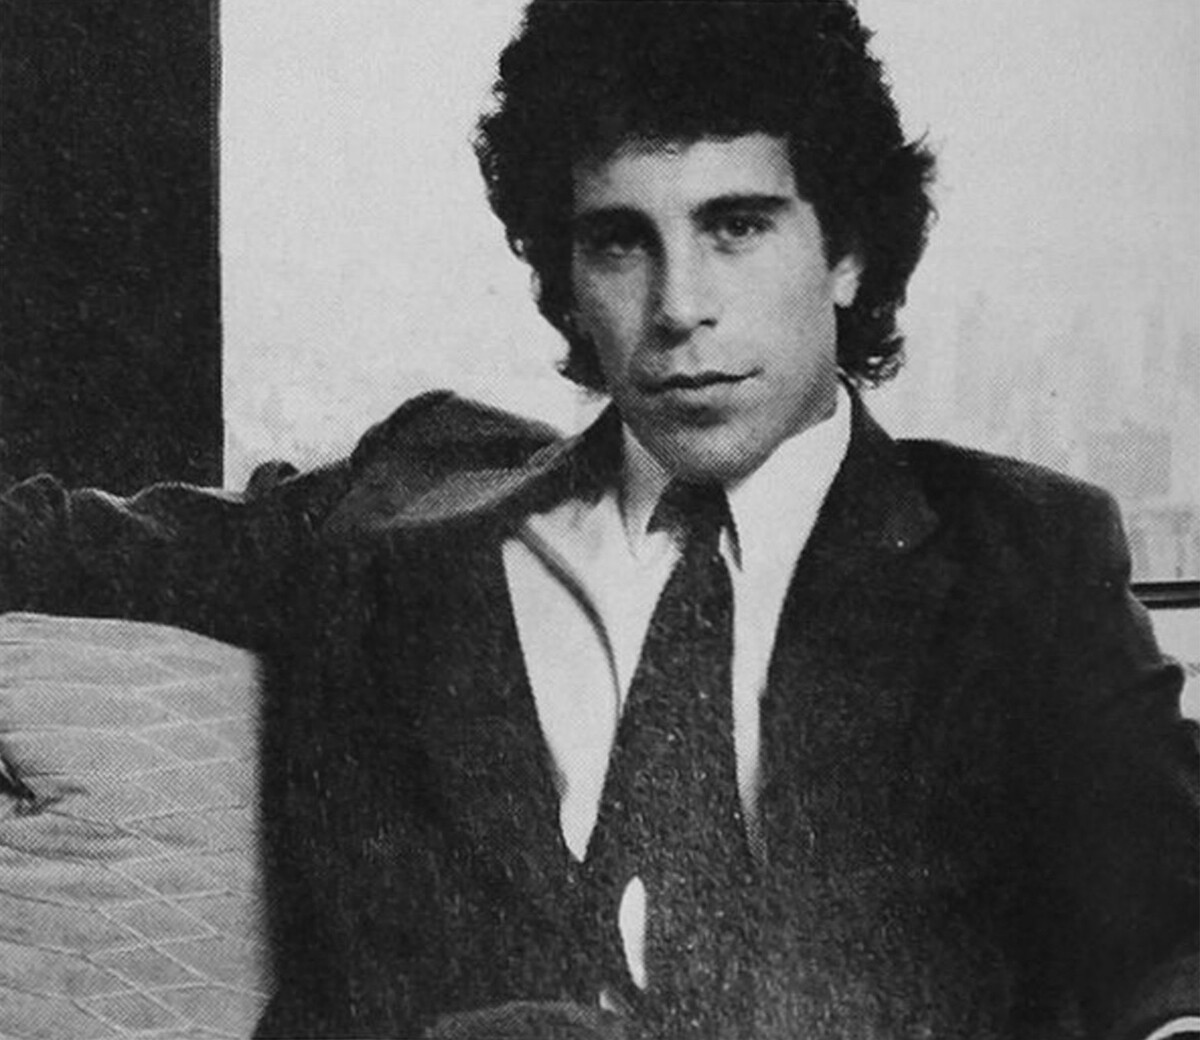 Jeffrey Epstein na fotce v Cosmopolitanu v roce 1980.